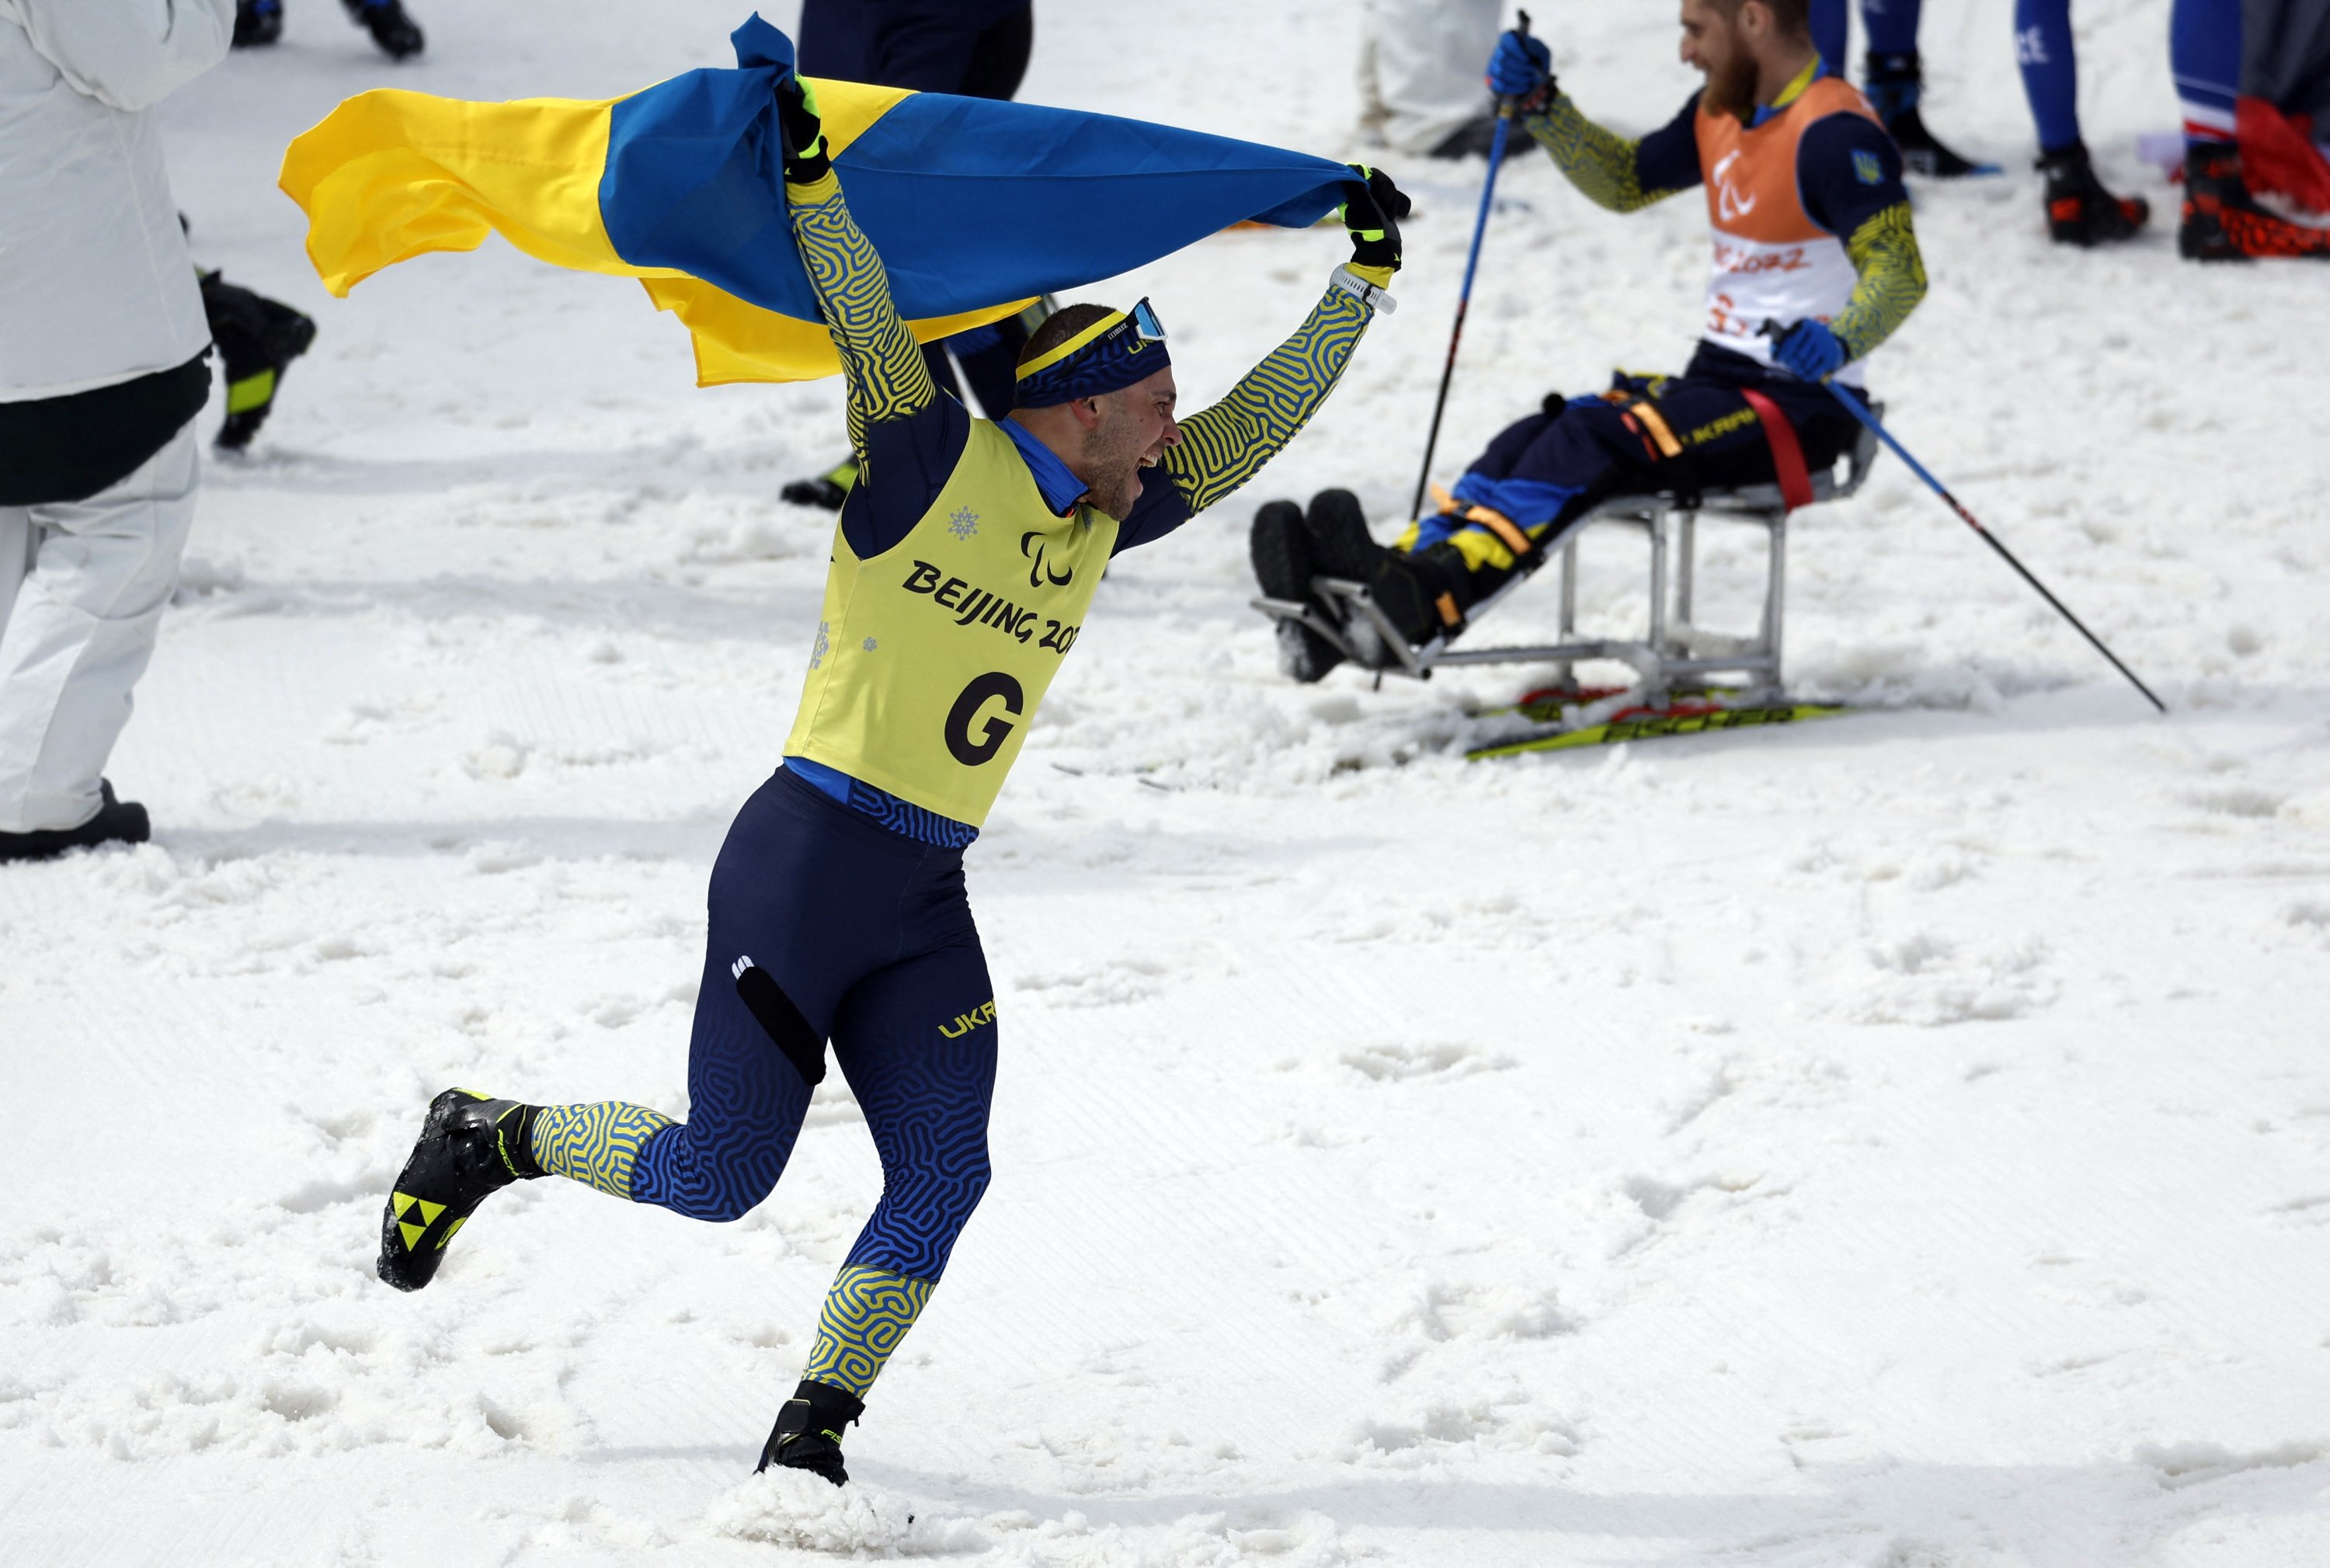 Winter paralympics 2022 medals